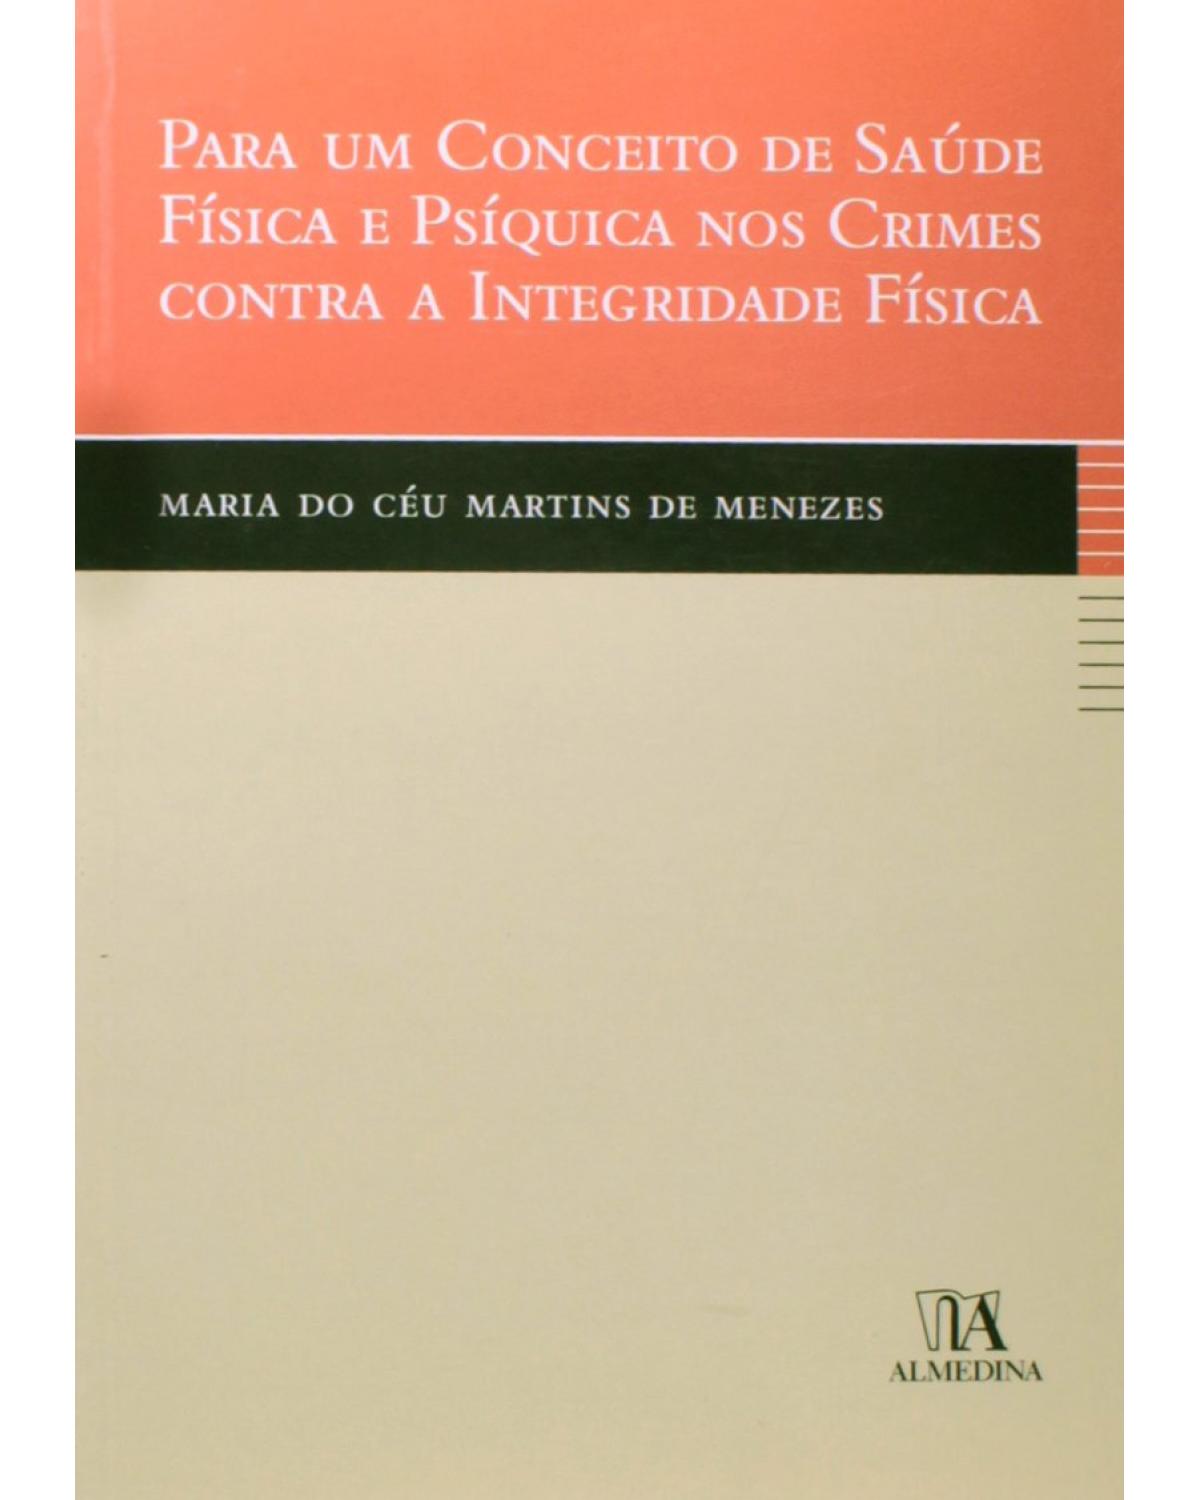 Para um conceito de saúde física e psíquica nos crimes contra a integridade física - 1ª Edição | 2007